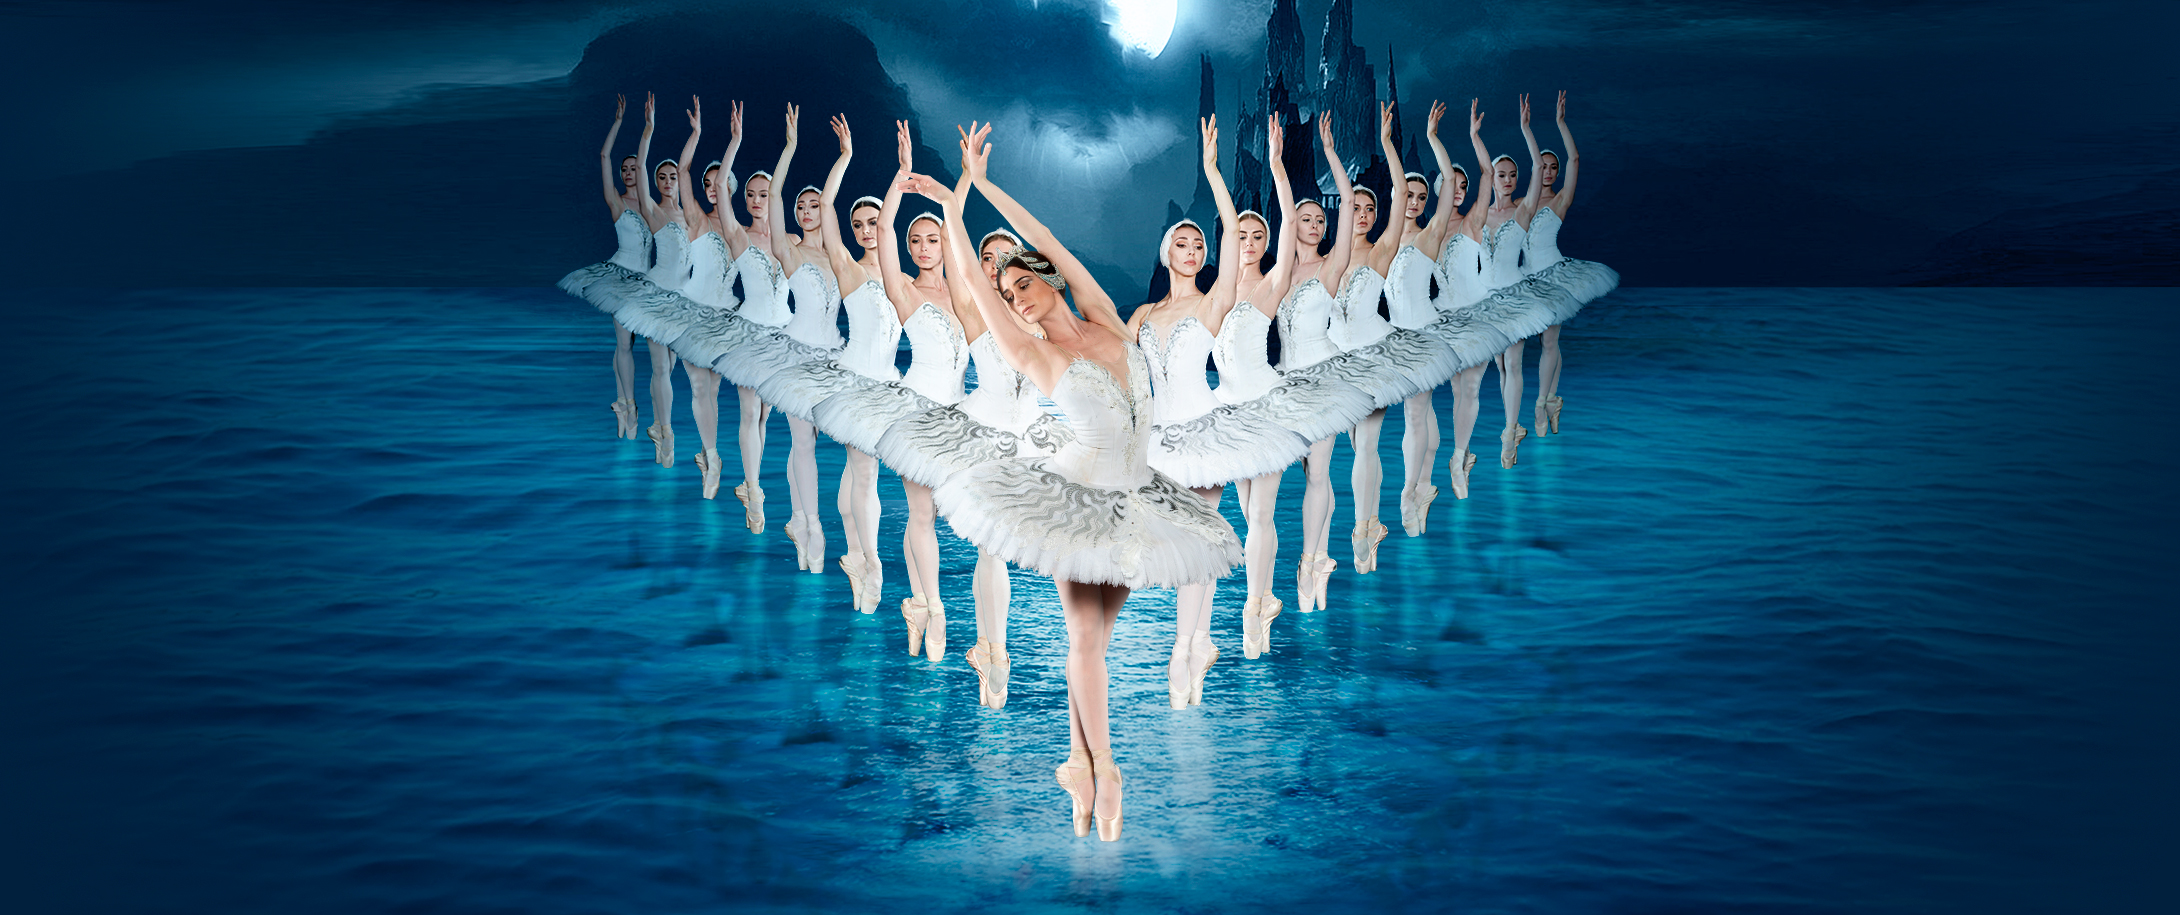 World Ballet Series: Swan Lake